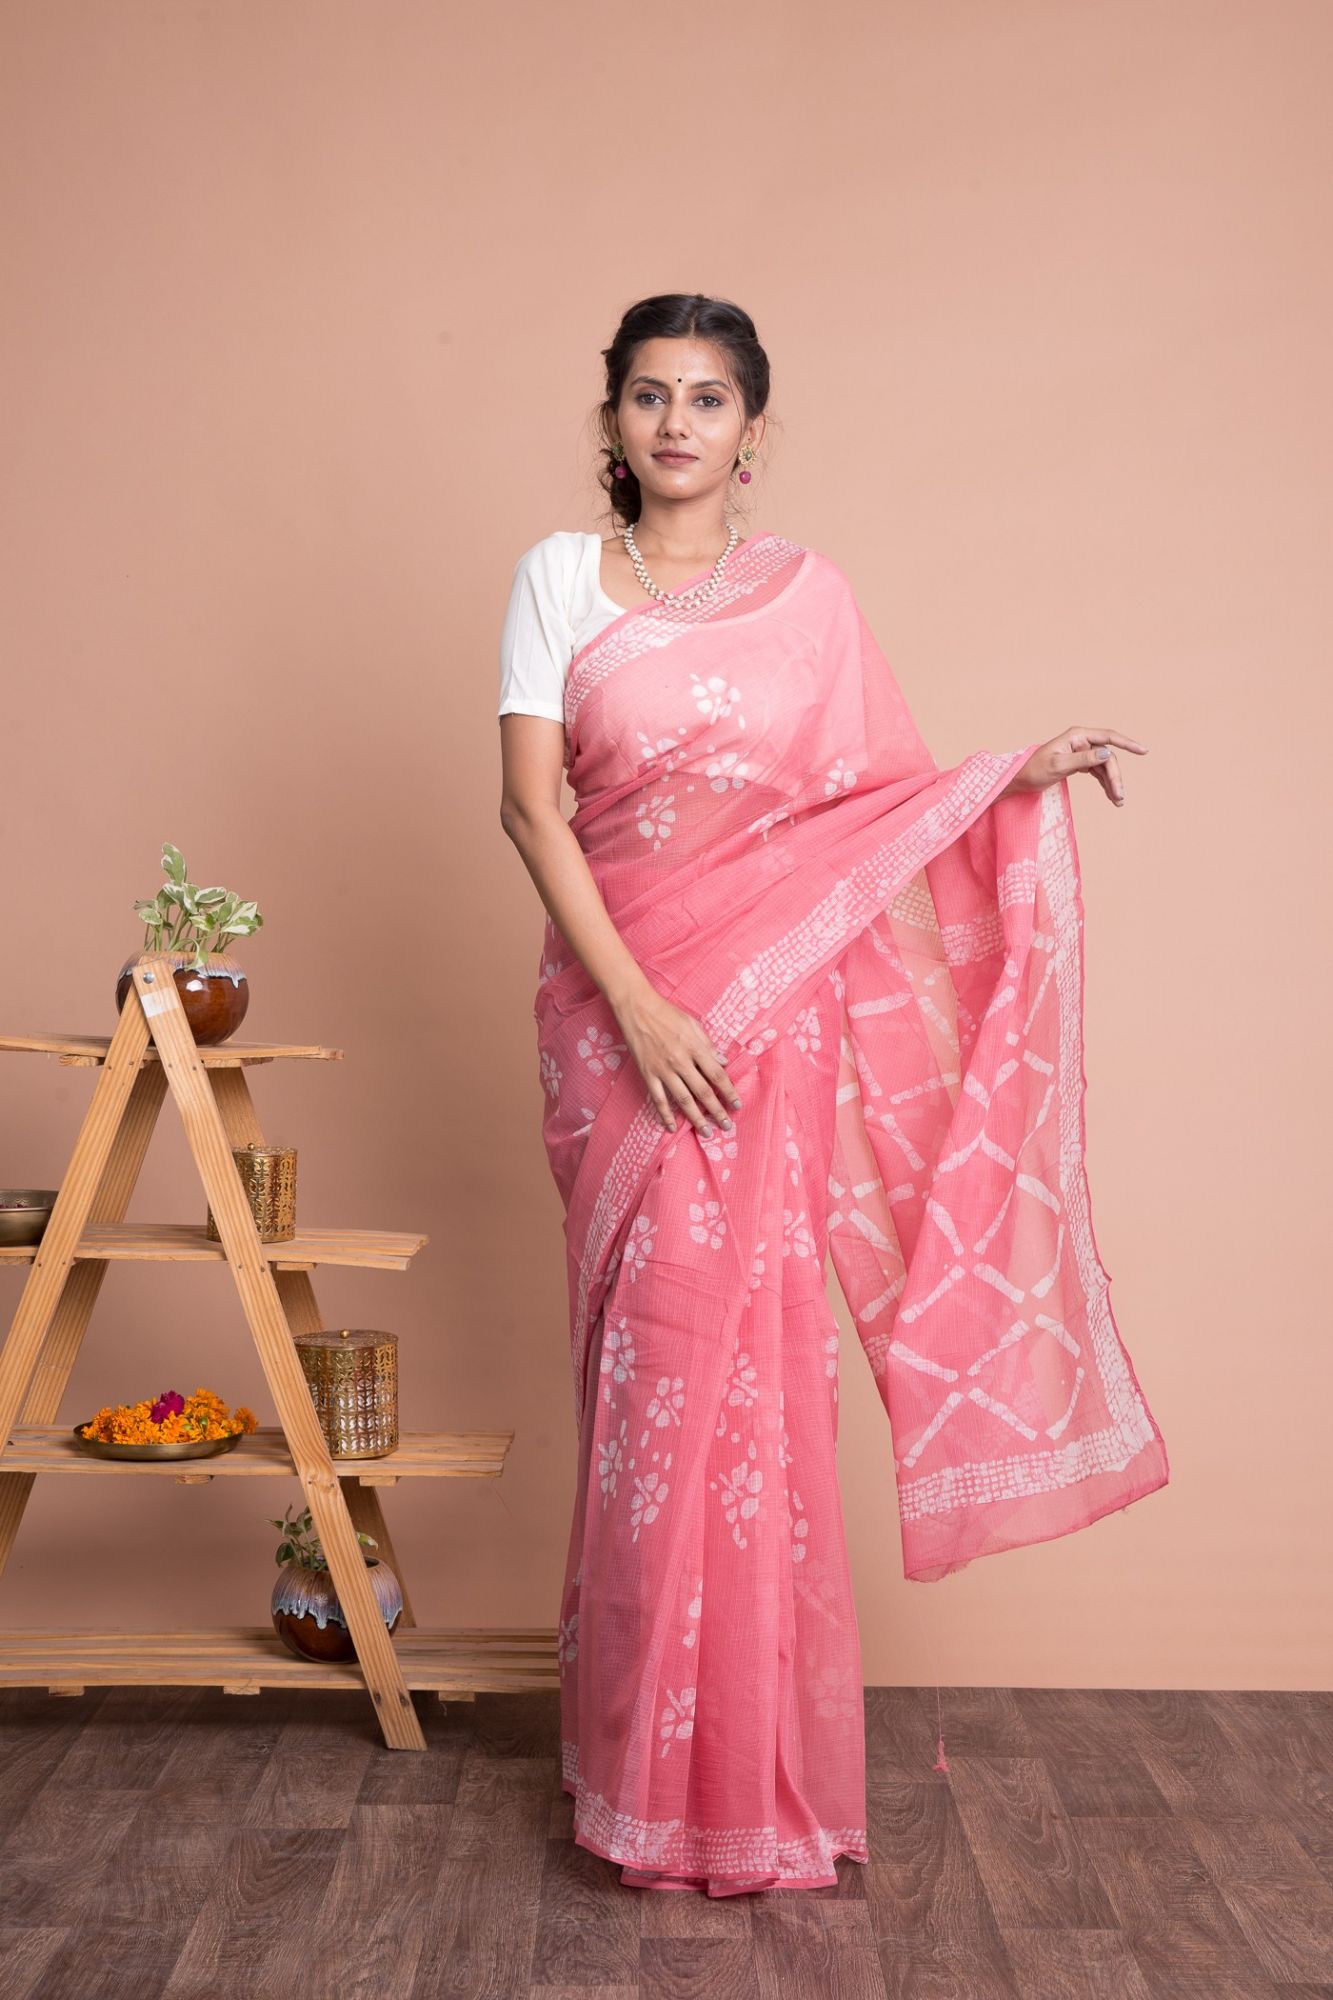 Batik Print Floral Pattern Kota Doria Saree with Mulmul Cotton Unstitched Blouse - Pink